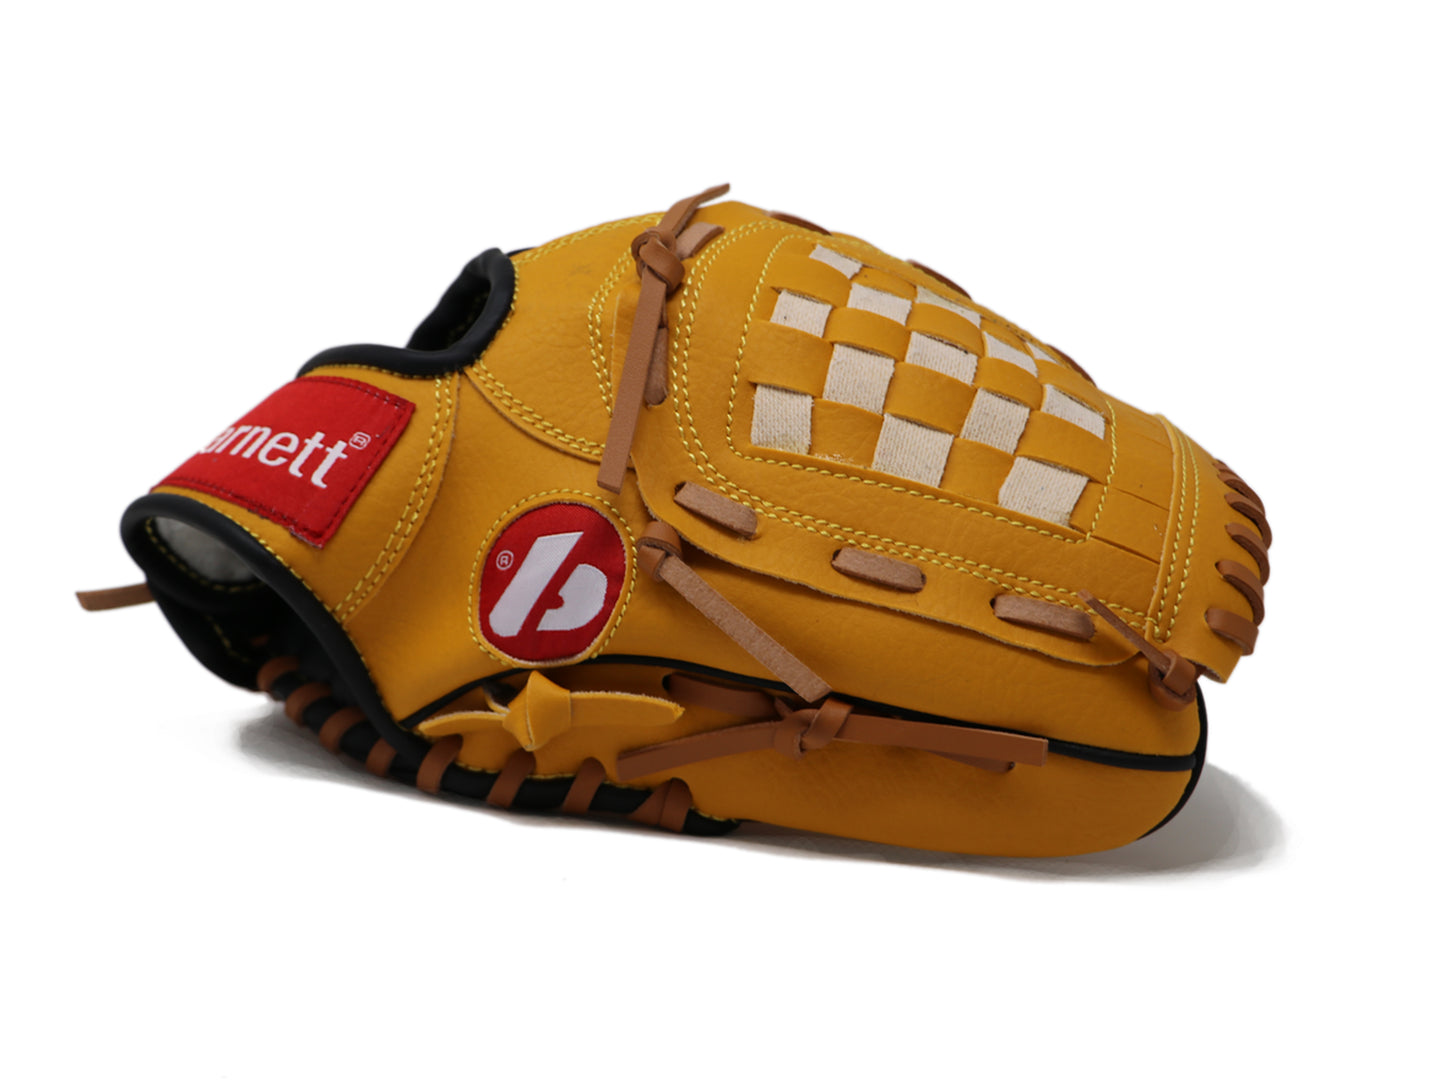 JL-105 Baseballhandschuh, Außenfeld, Polyurethan, Größe 10,5", braun